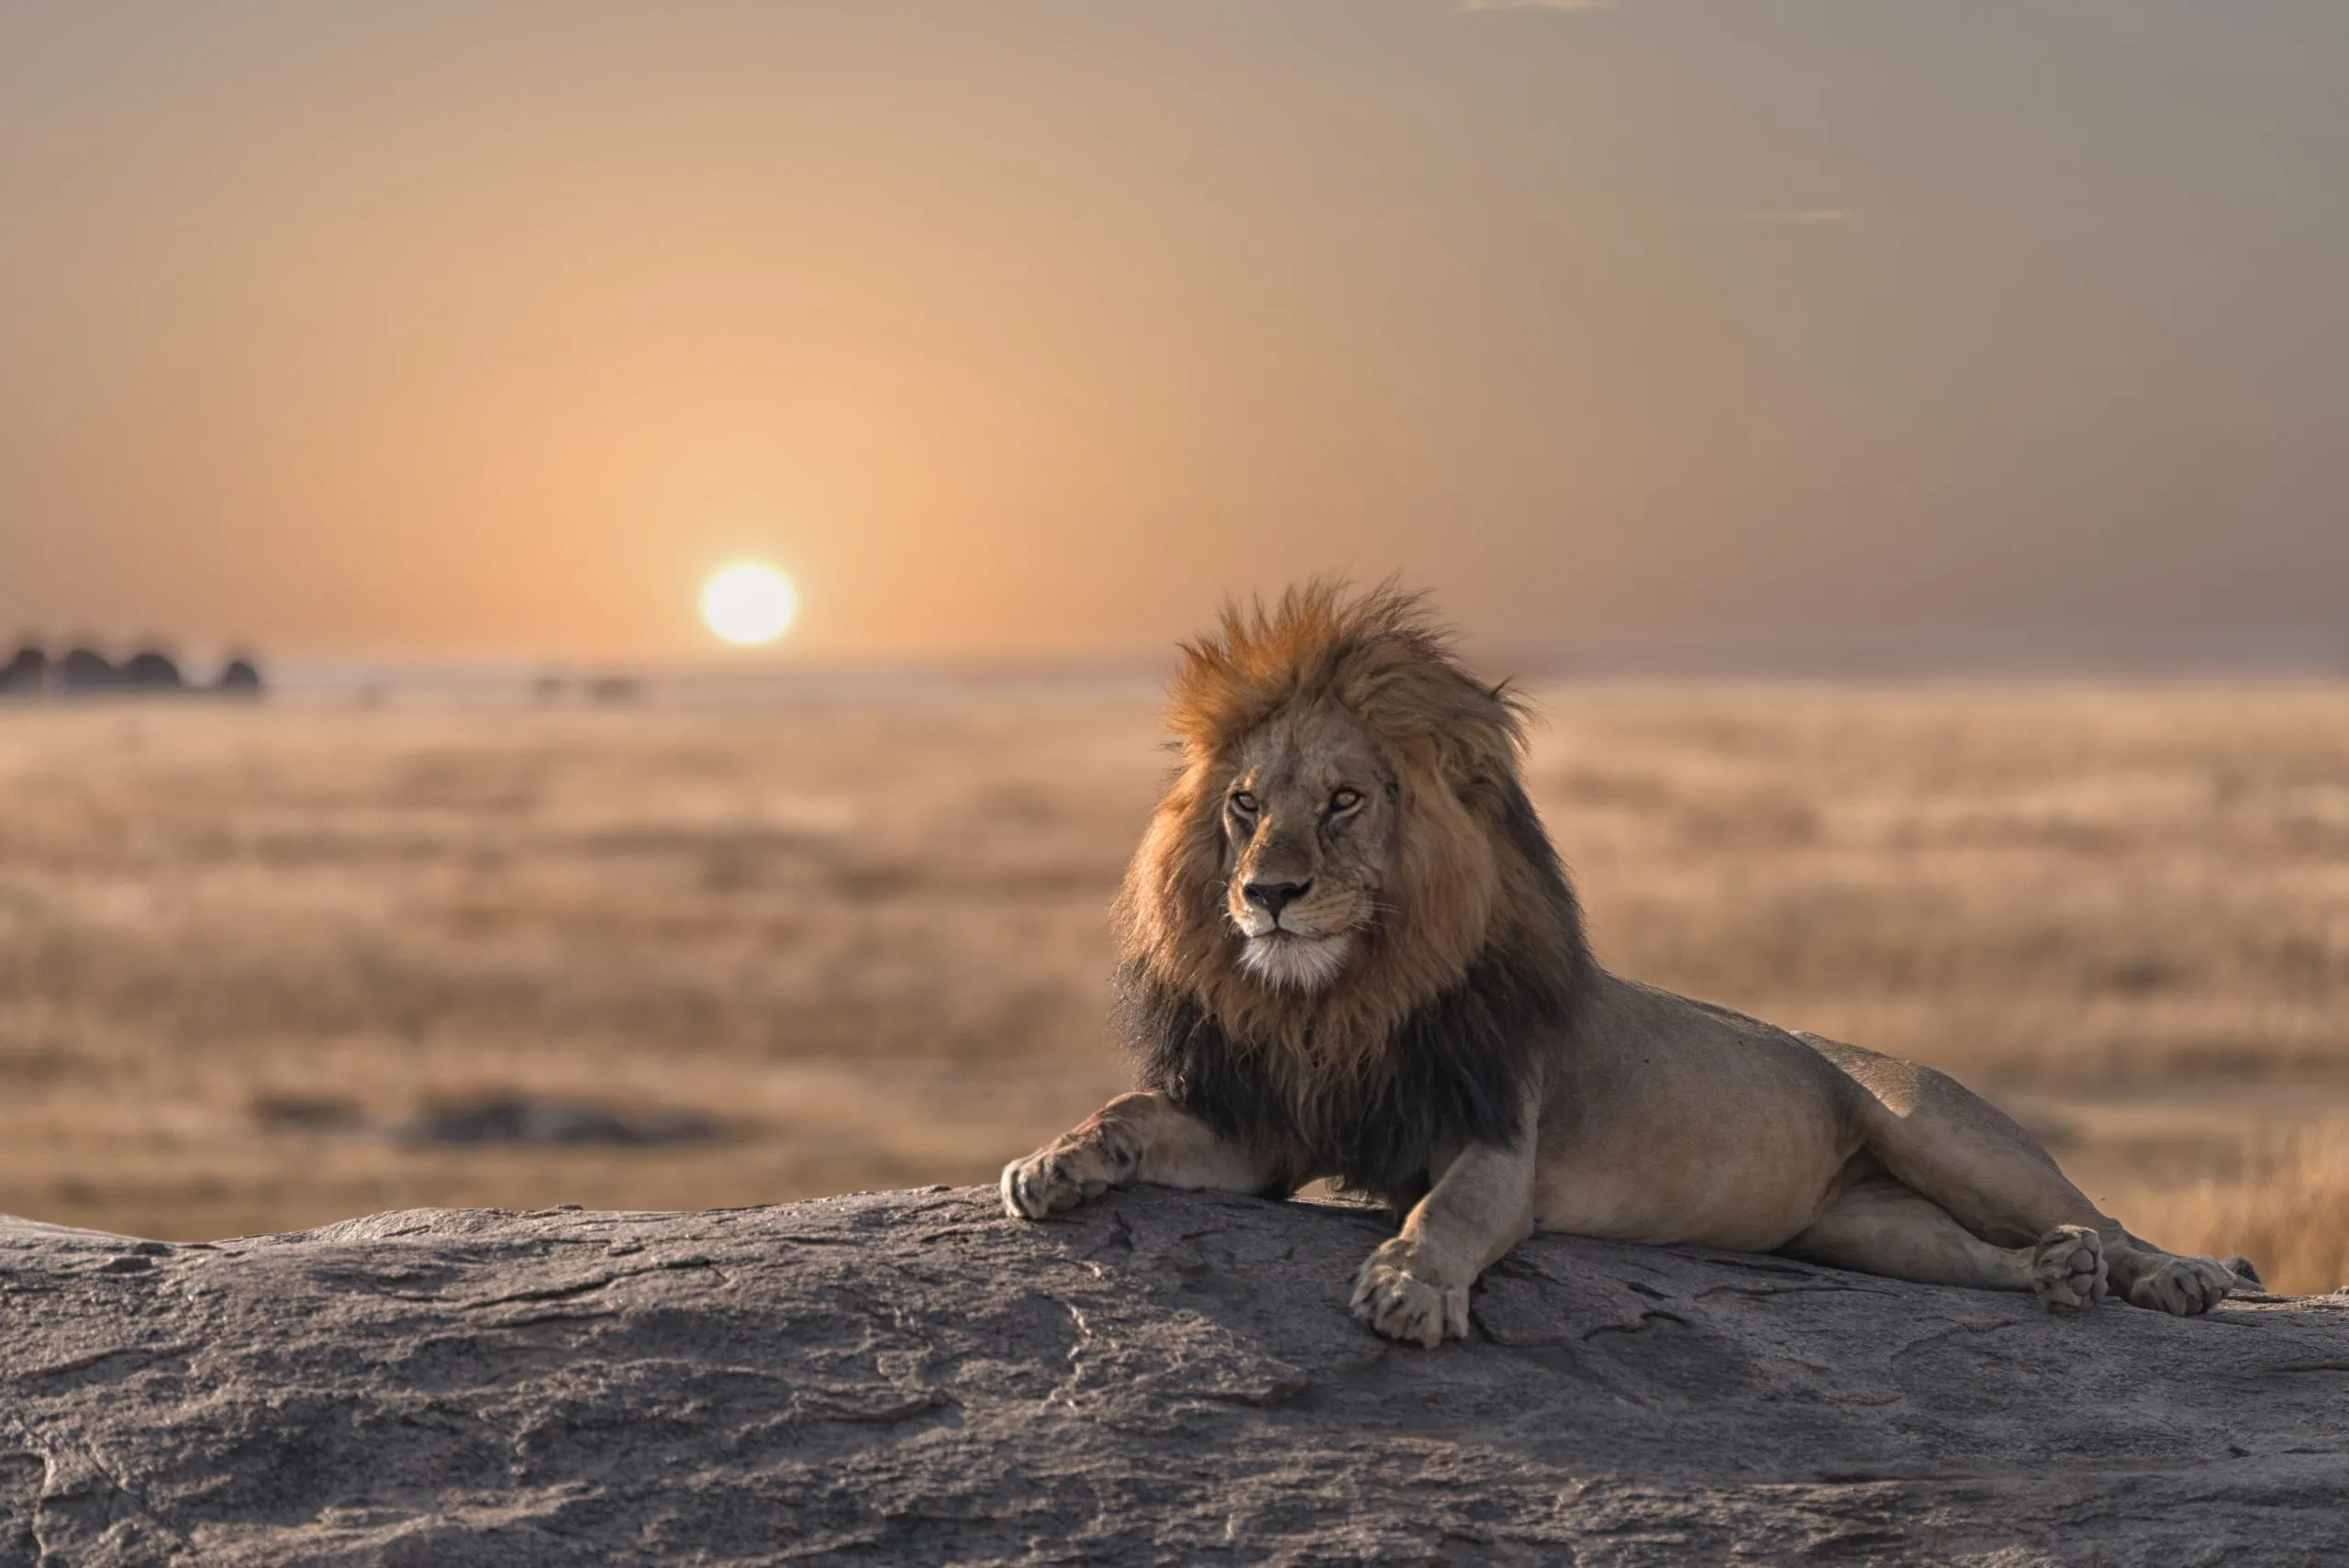 Ein männlicher Löwe sitzt auf der Spitze des Felsens und sucht sein Revier. Er sieht so prächtig aus.